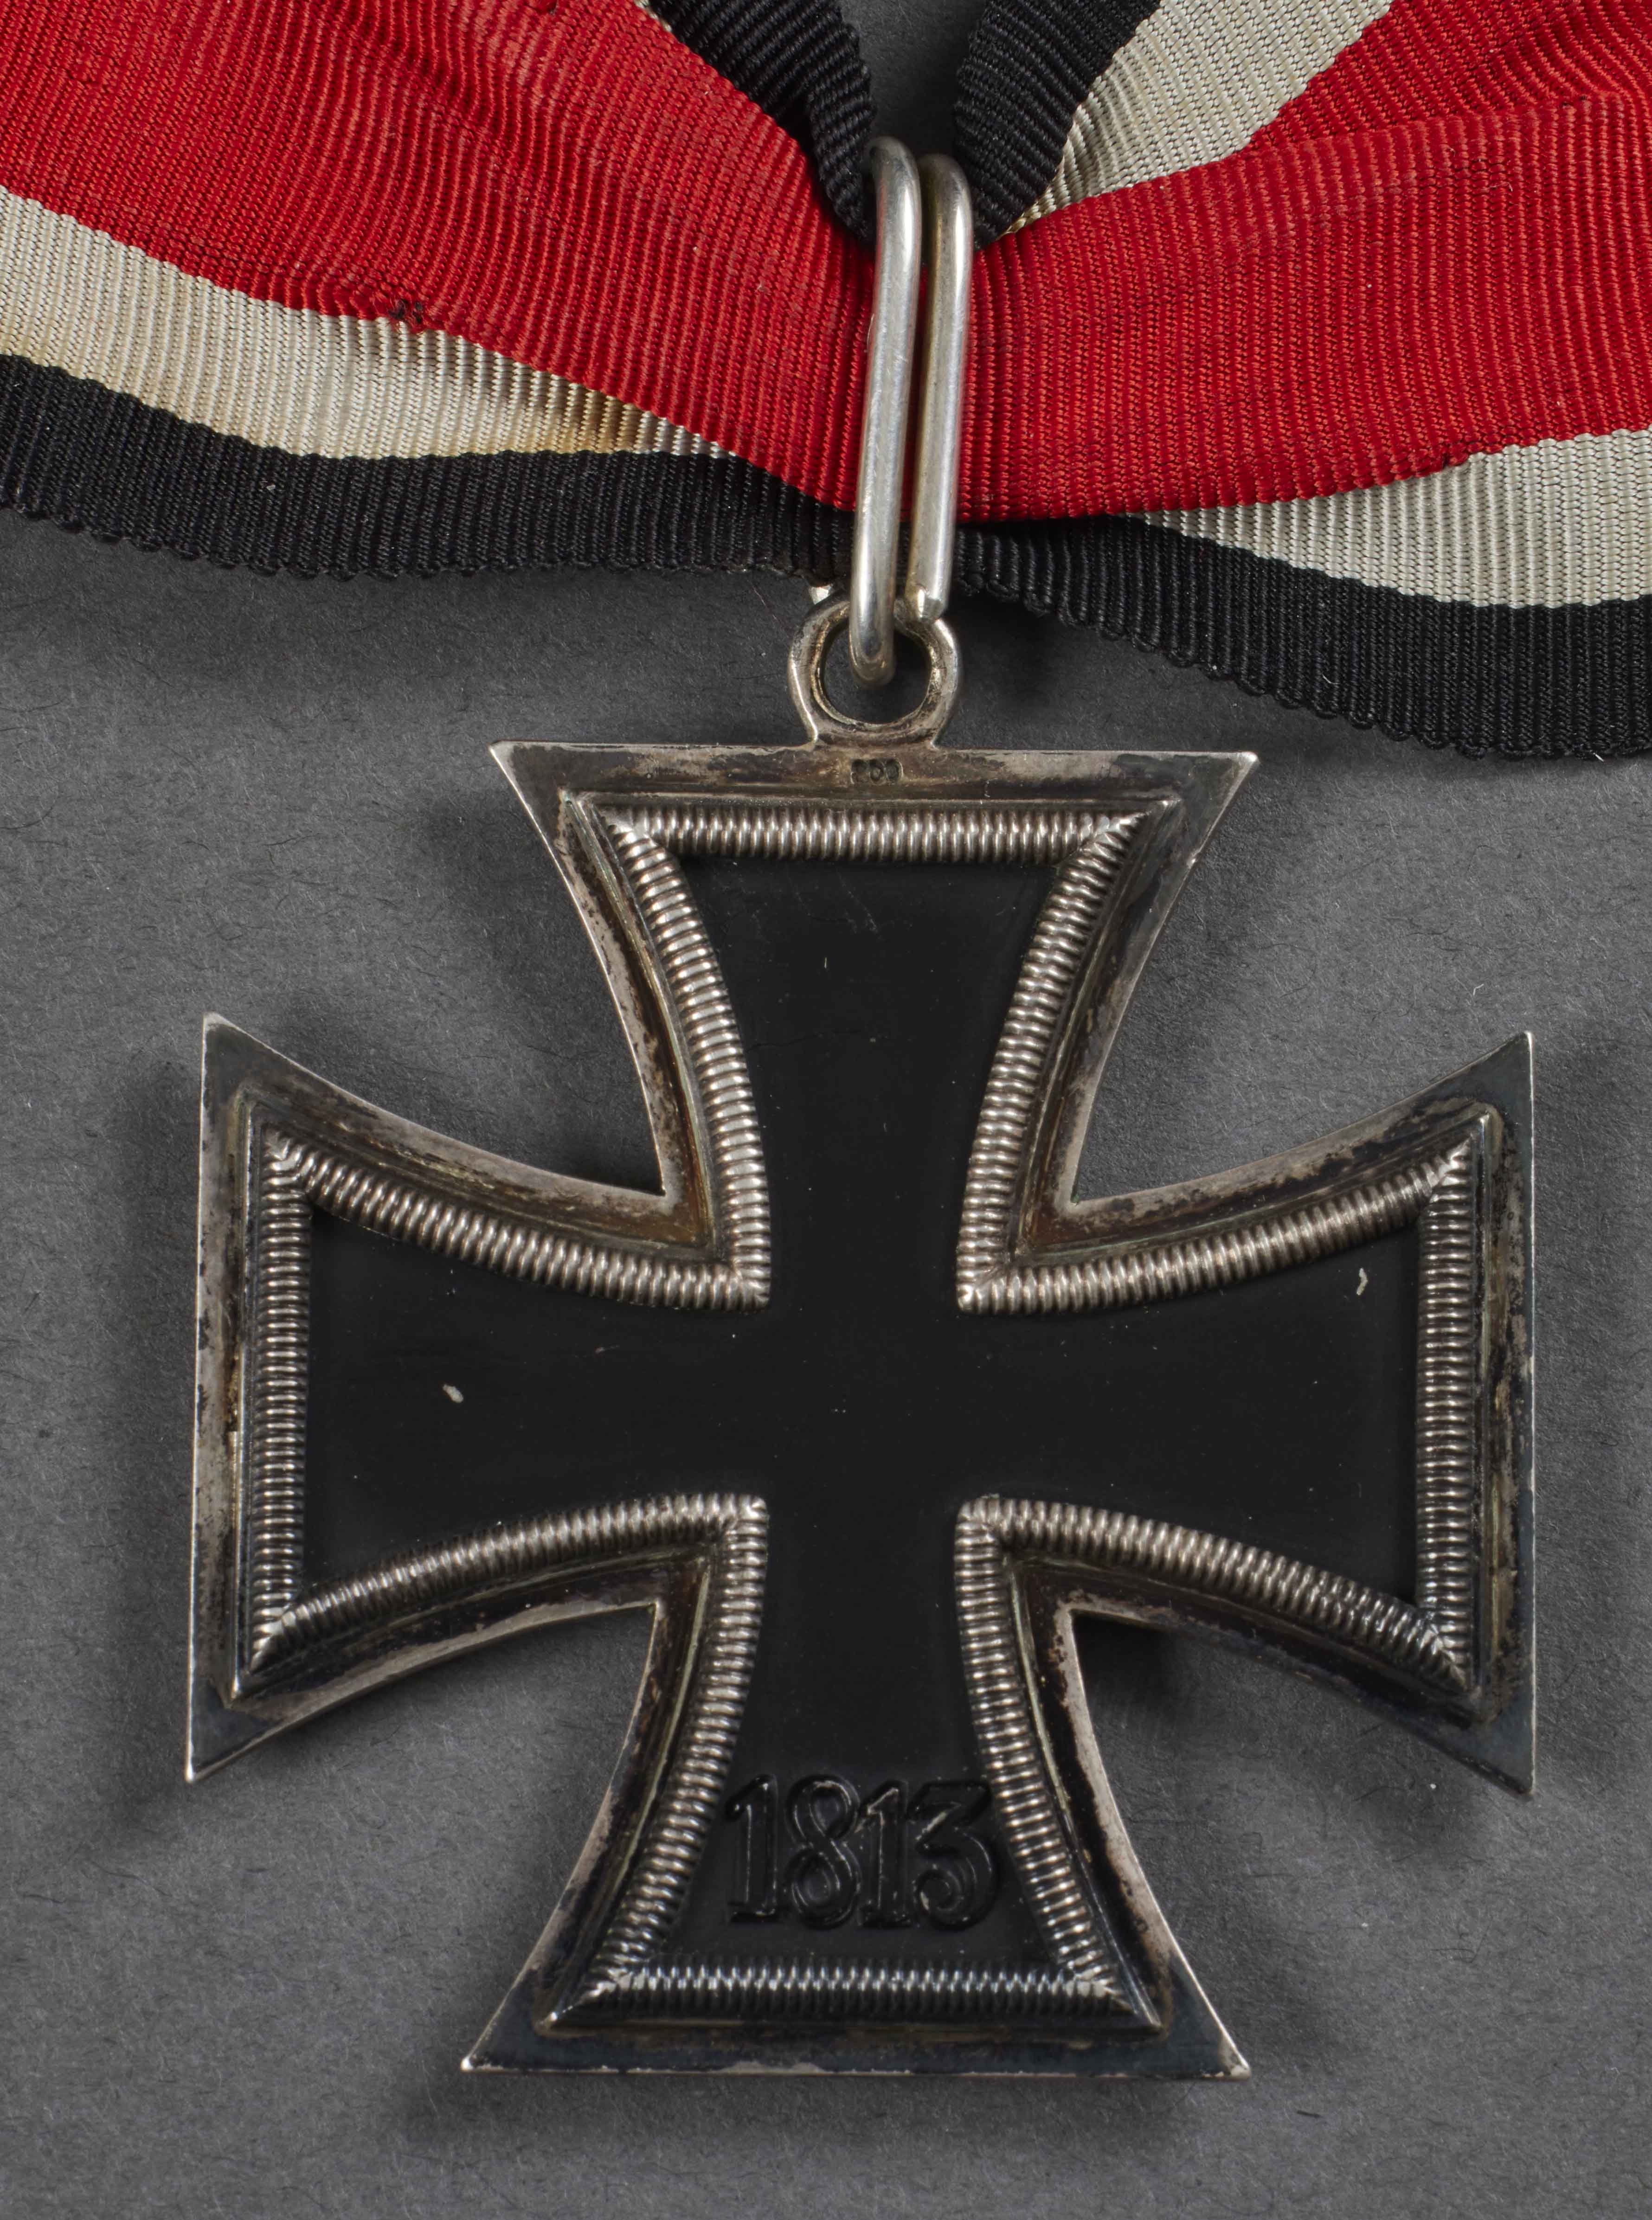 Knights Cross Iron Cross 1939 by Steinhauer & Luck 